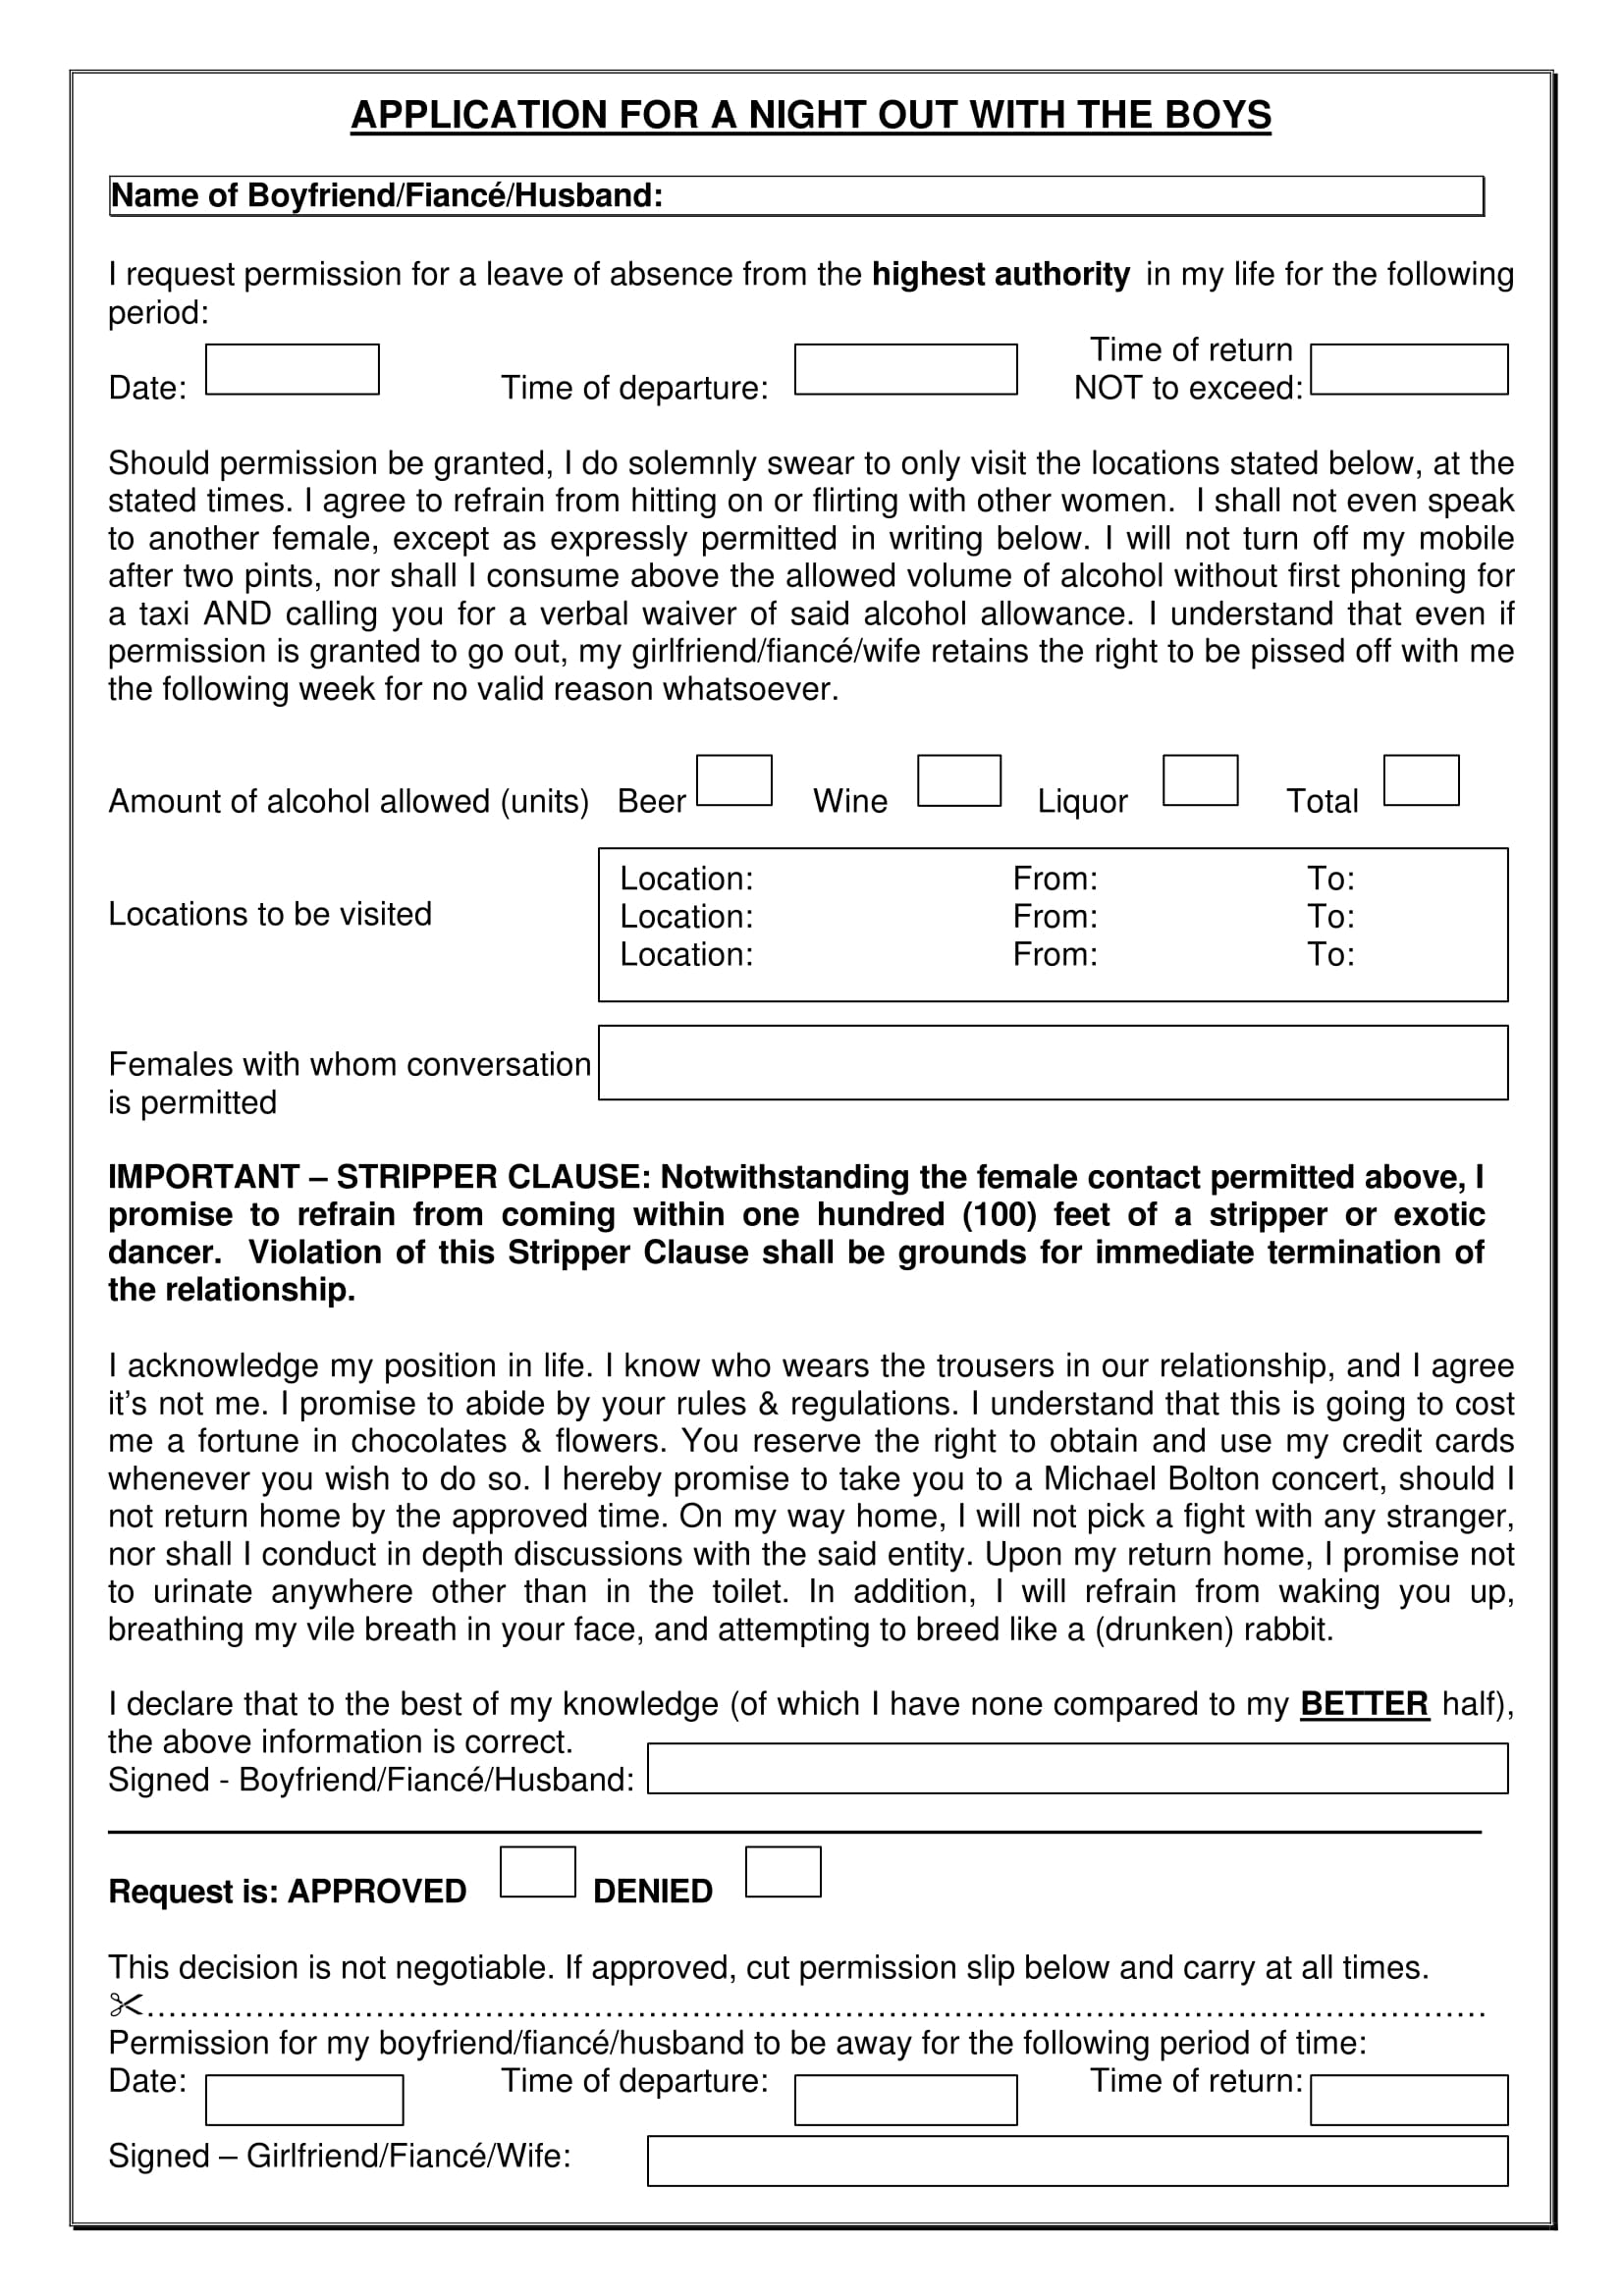 boyfriend night out application form 1